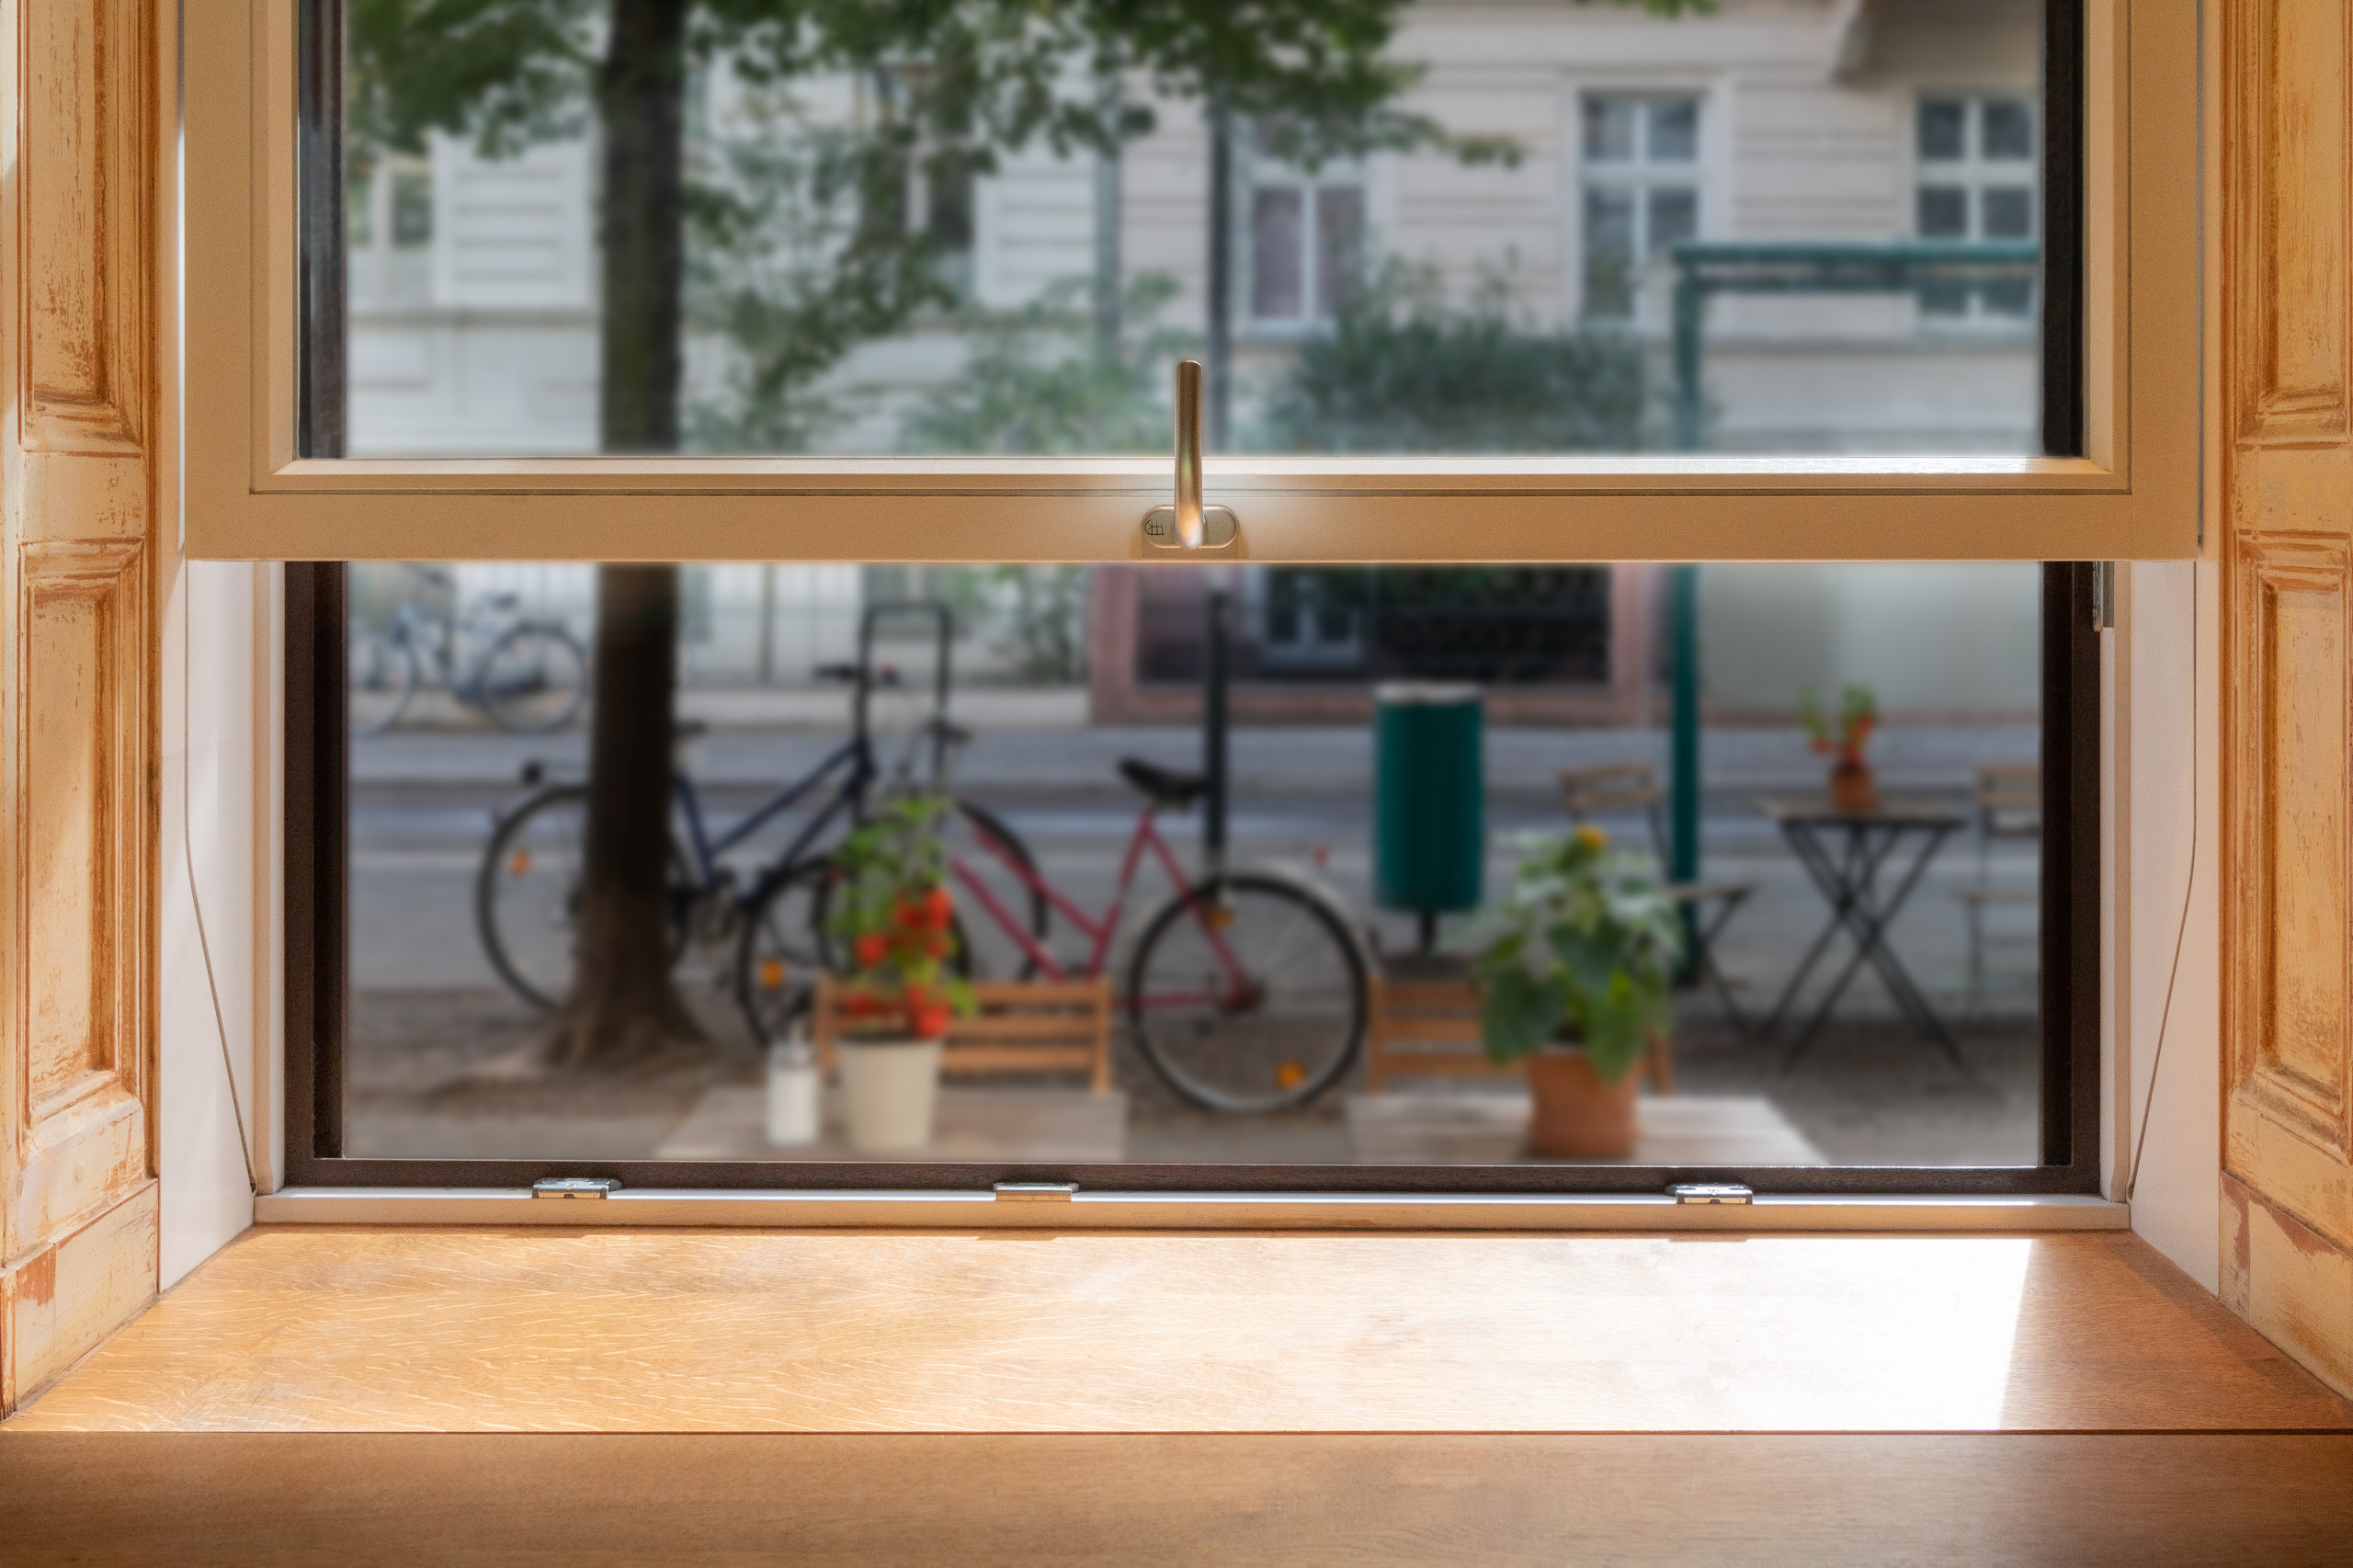 Schiebefenster – sind sie wirklich eine sinnvolle Alternative